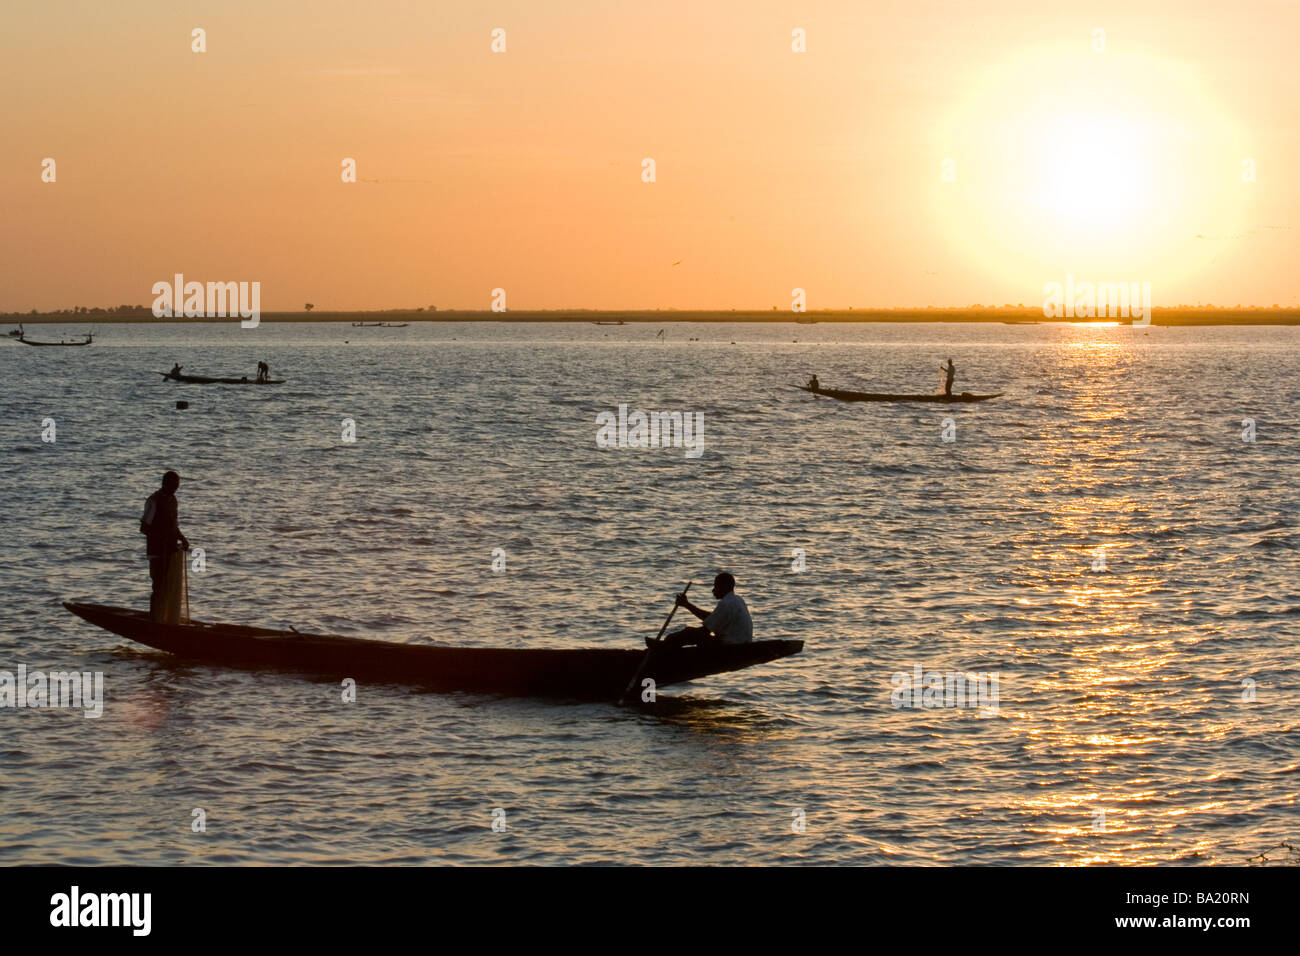 Fishing on the Bani River in Mopti Mali Stock Photo